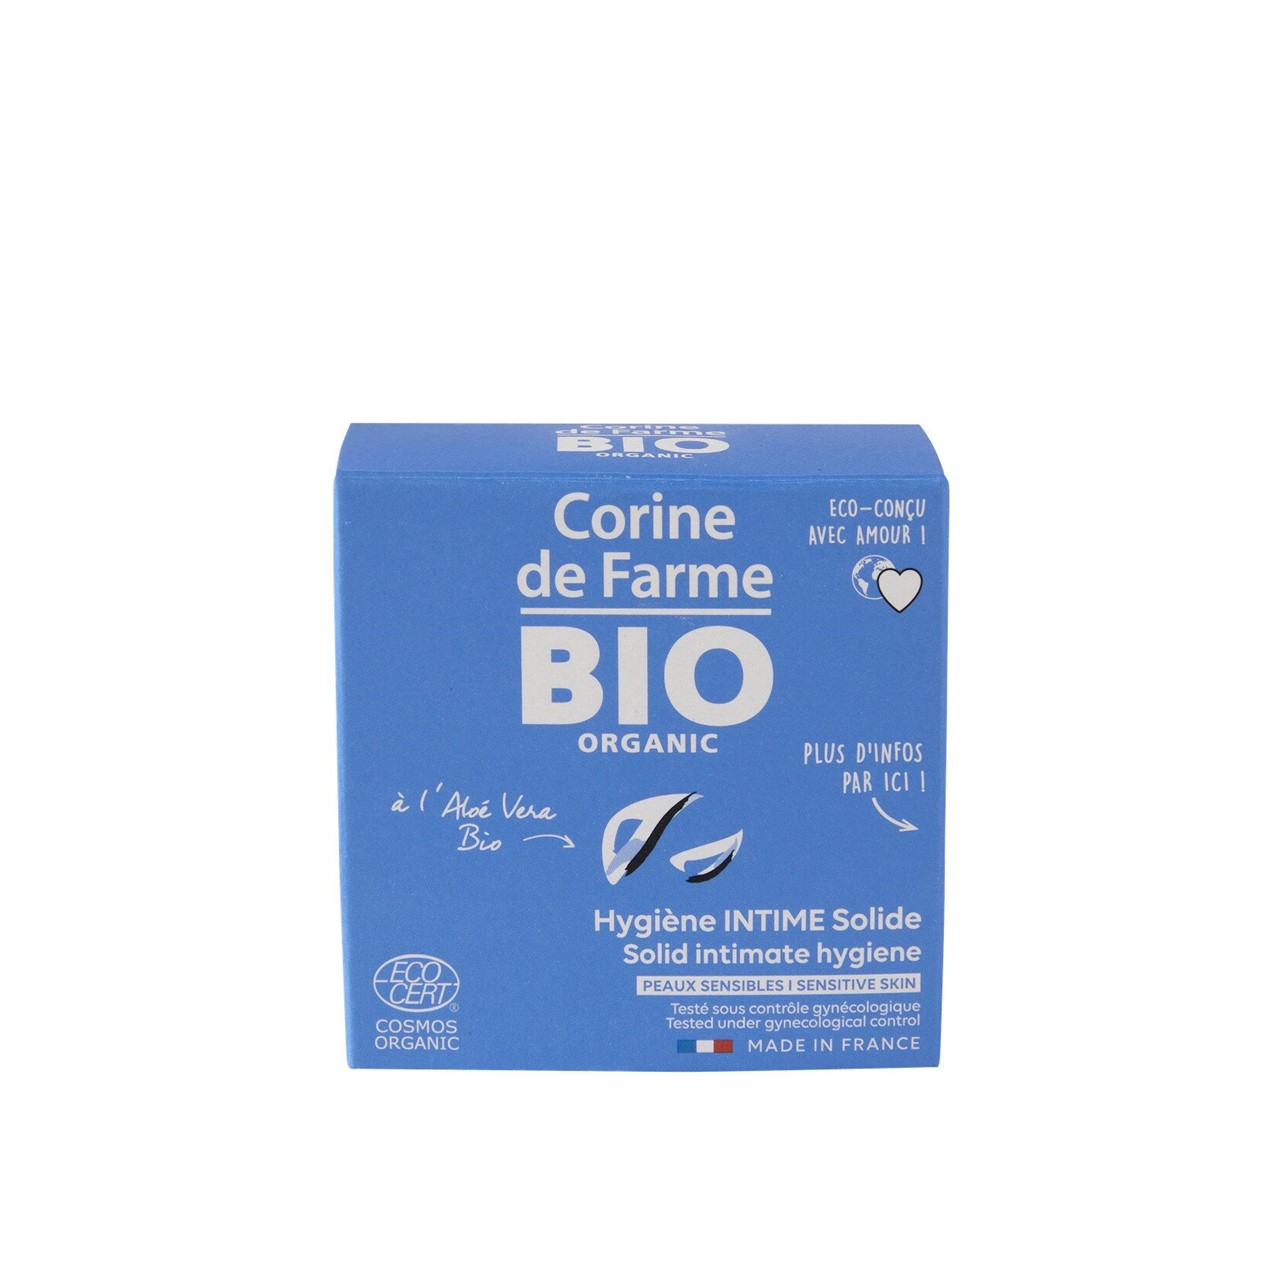 Corine de Farme Bio Solid Intimate Hygiene With Organic Aloe Vera 60g (2.11oz)